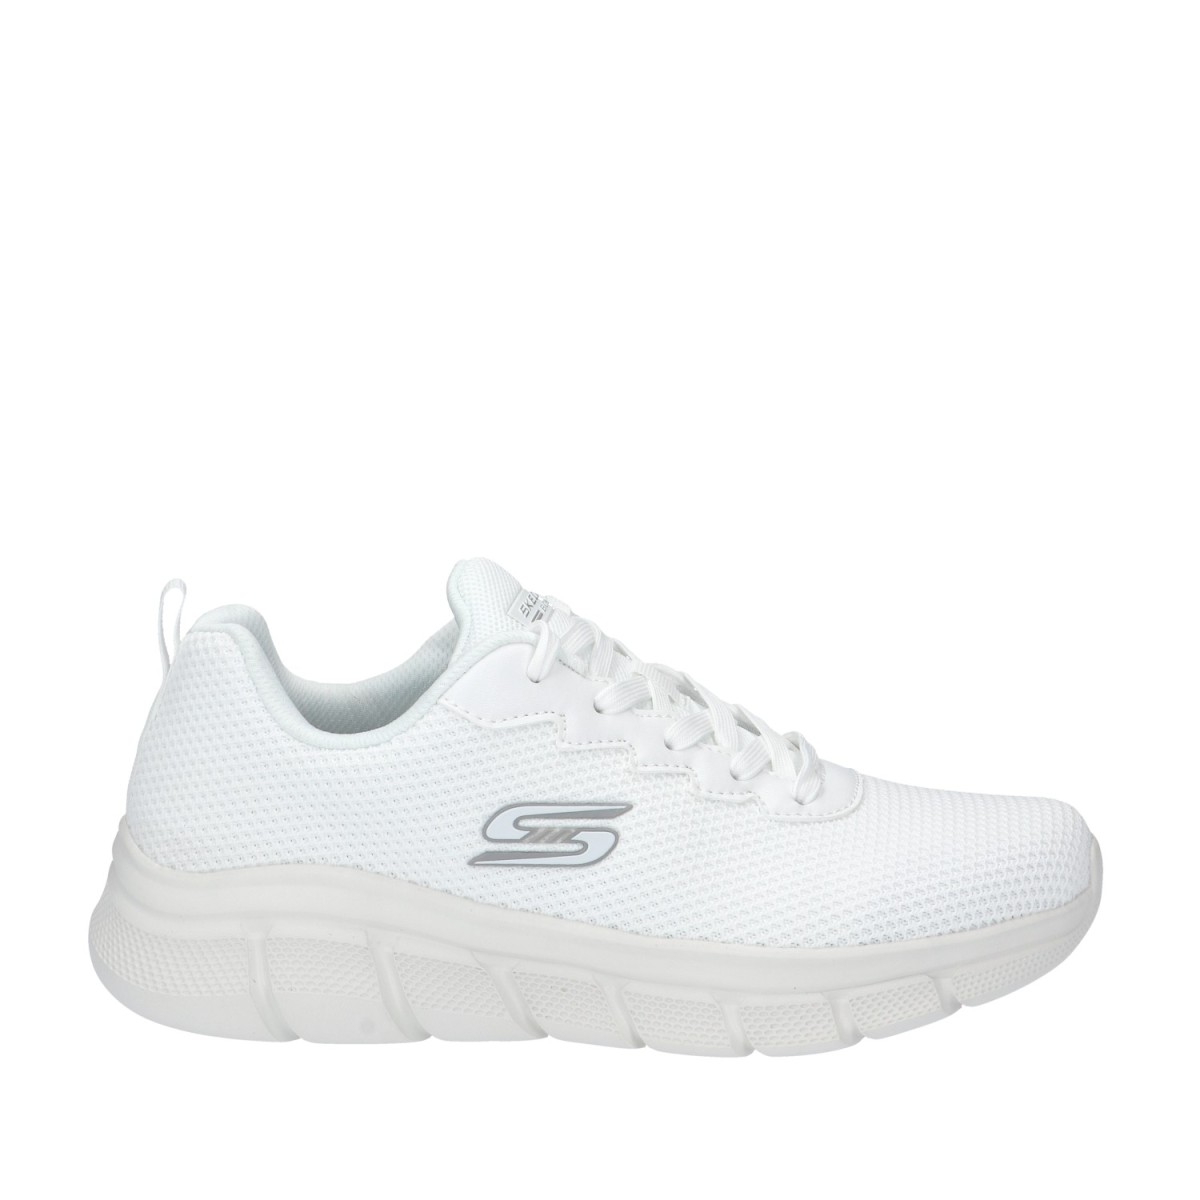 Skechers Sneaker Bianco spento Gomma 118106